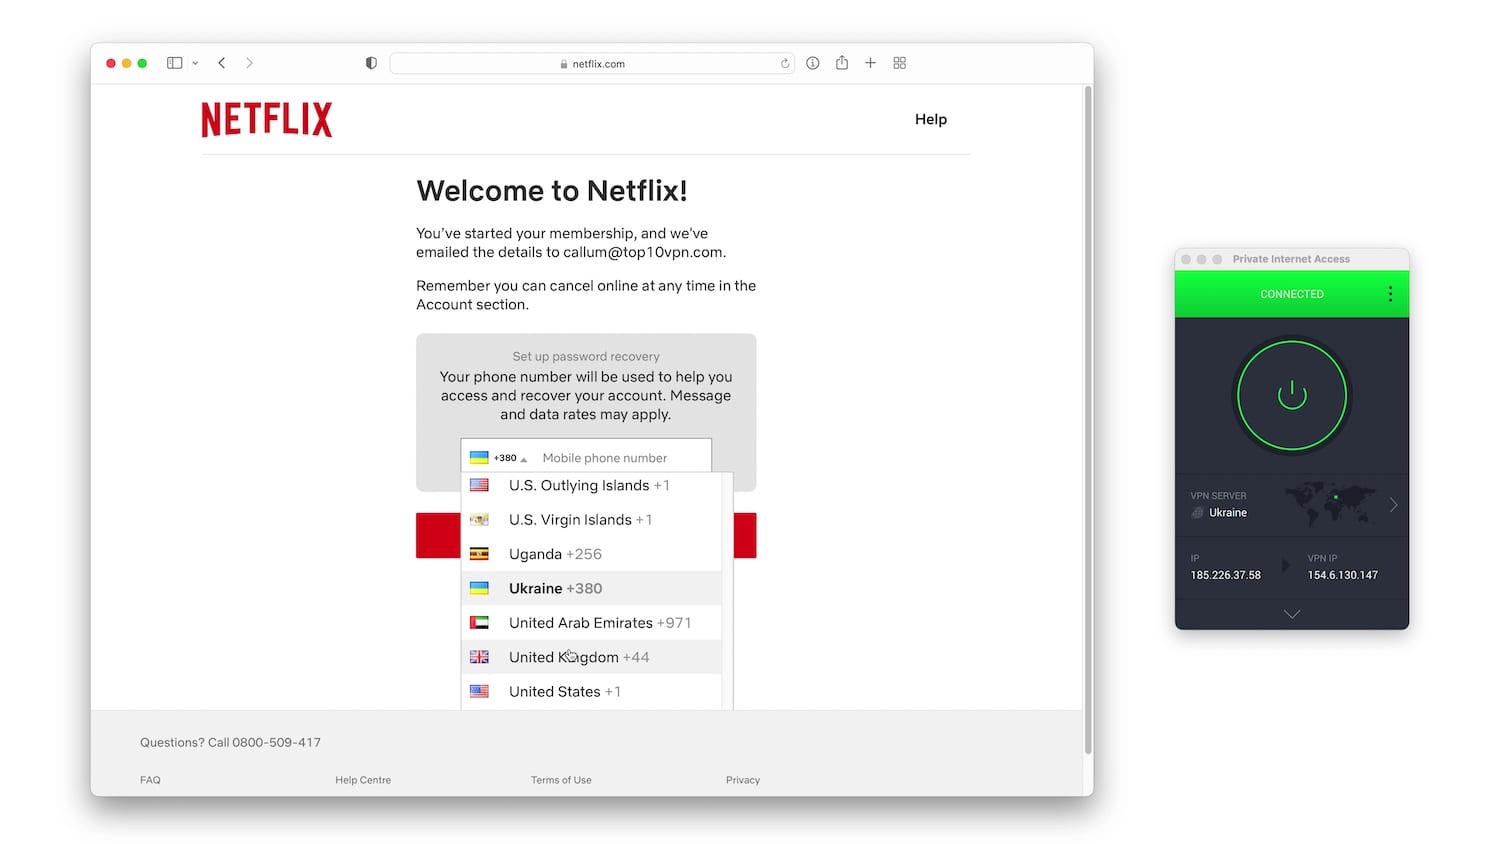 La schermata di successo dell'iscrizione a Netflix, che include un menu a tendina con i codici di composizione del telefono cellulare associato all'account